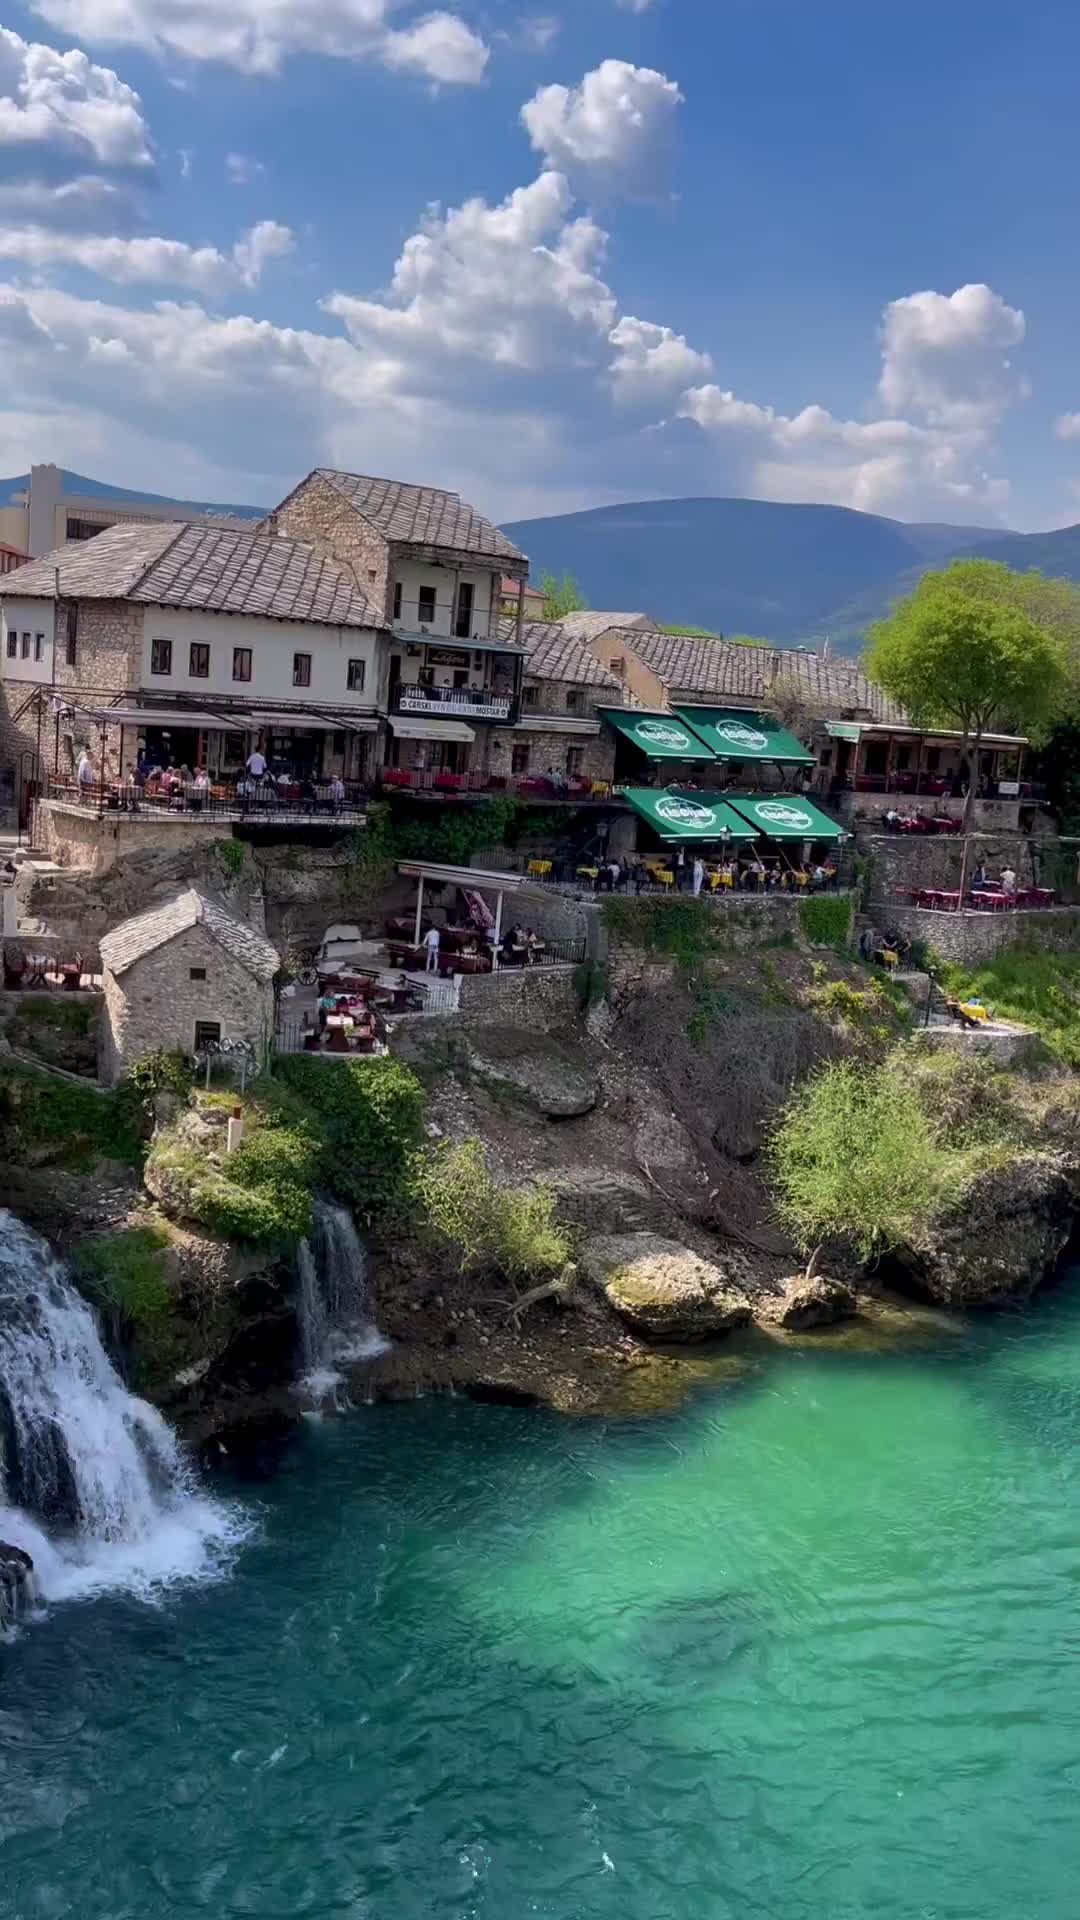 A Day Trip to Mostar - Explore Bosnia's Hidden Gem